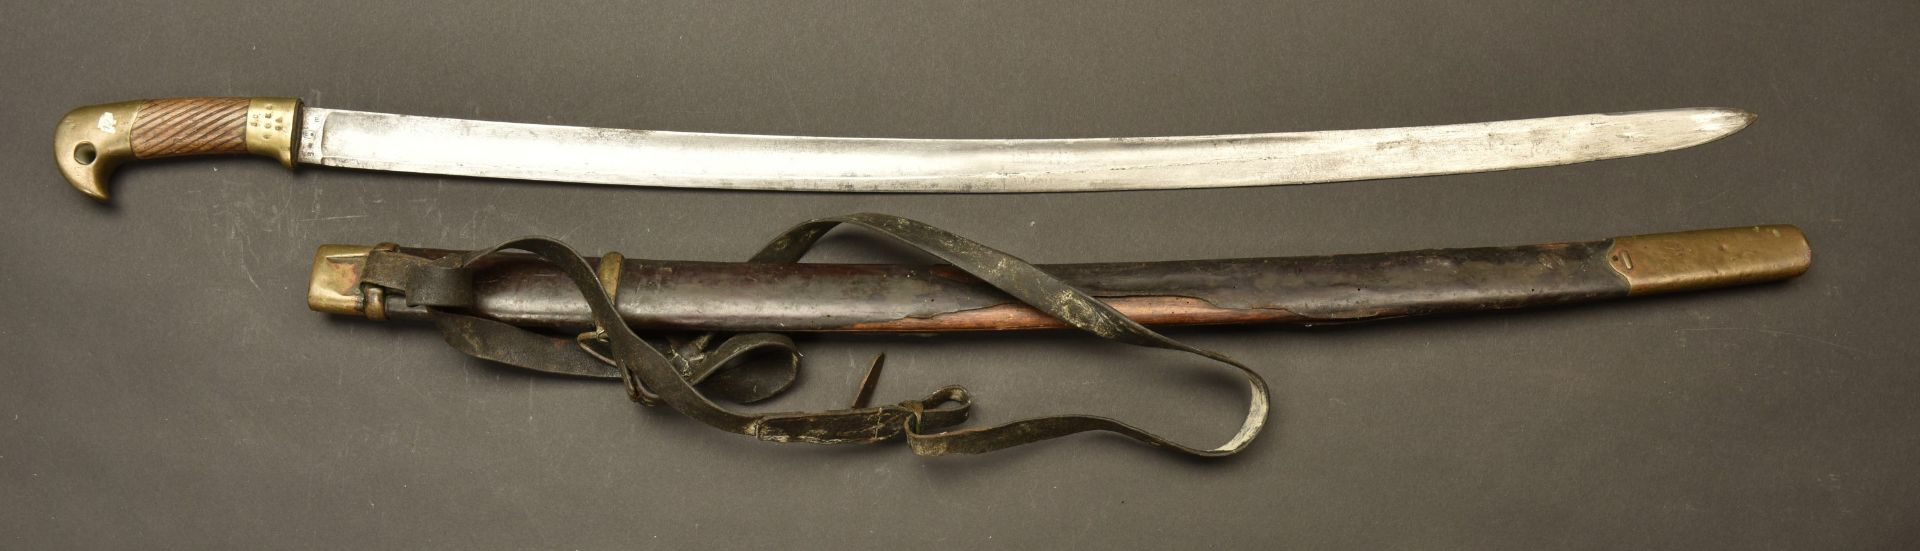 Sabre russe Shashka de Cosaque M1881 de 1901. Russian cossack sashka sword pattern 1881 dated 1901.  - Image 2 of 4